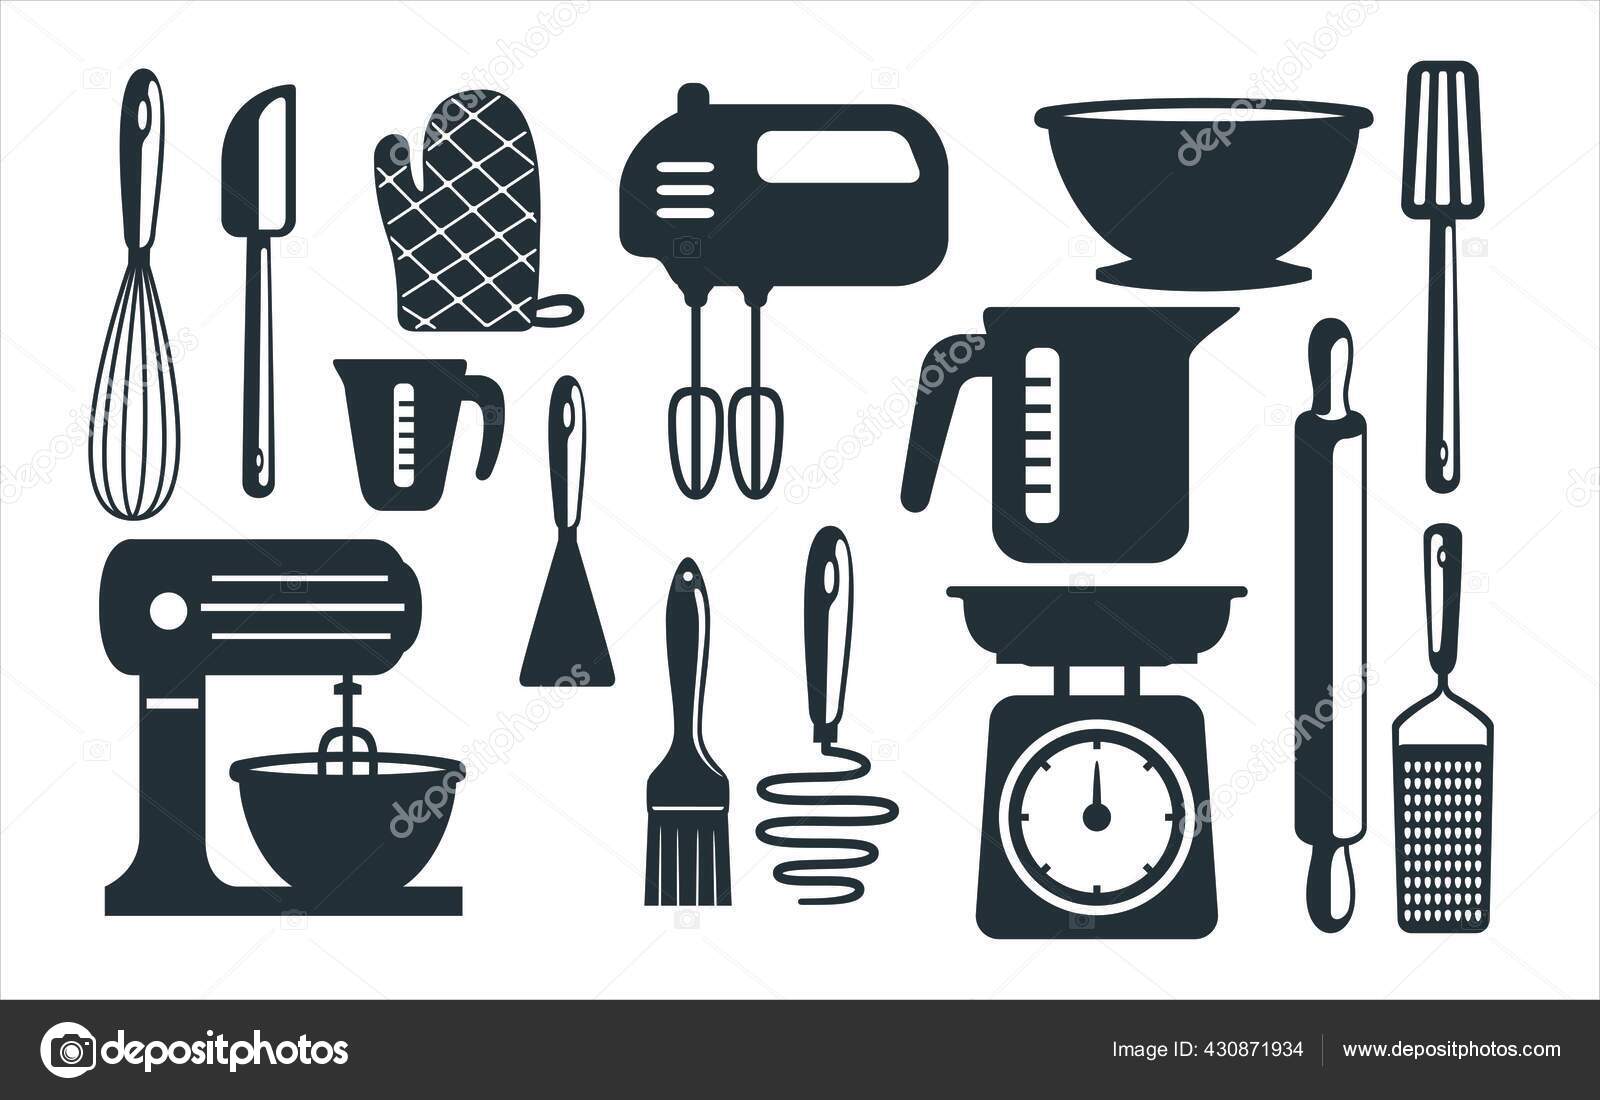 https://st2.depositphotos.com/15707374/43087/v/1600/depositphotos_430871934-stock-illustration-baking-utensils-kitchen-equipment-vector.jpg